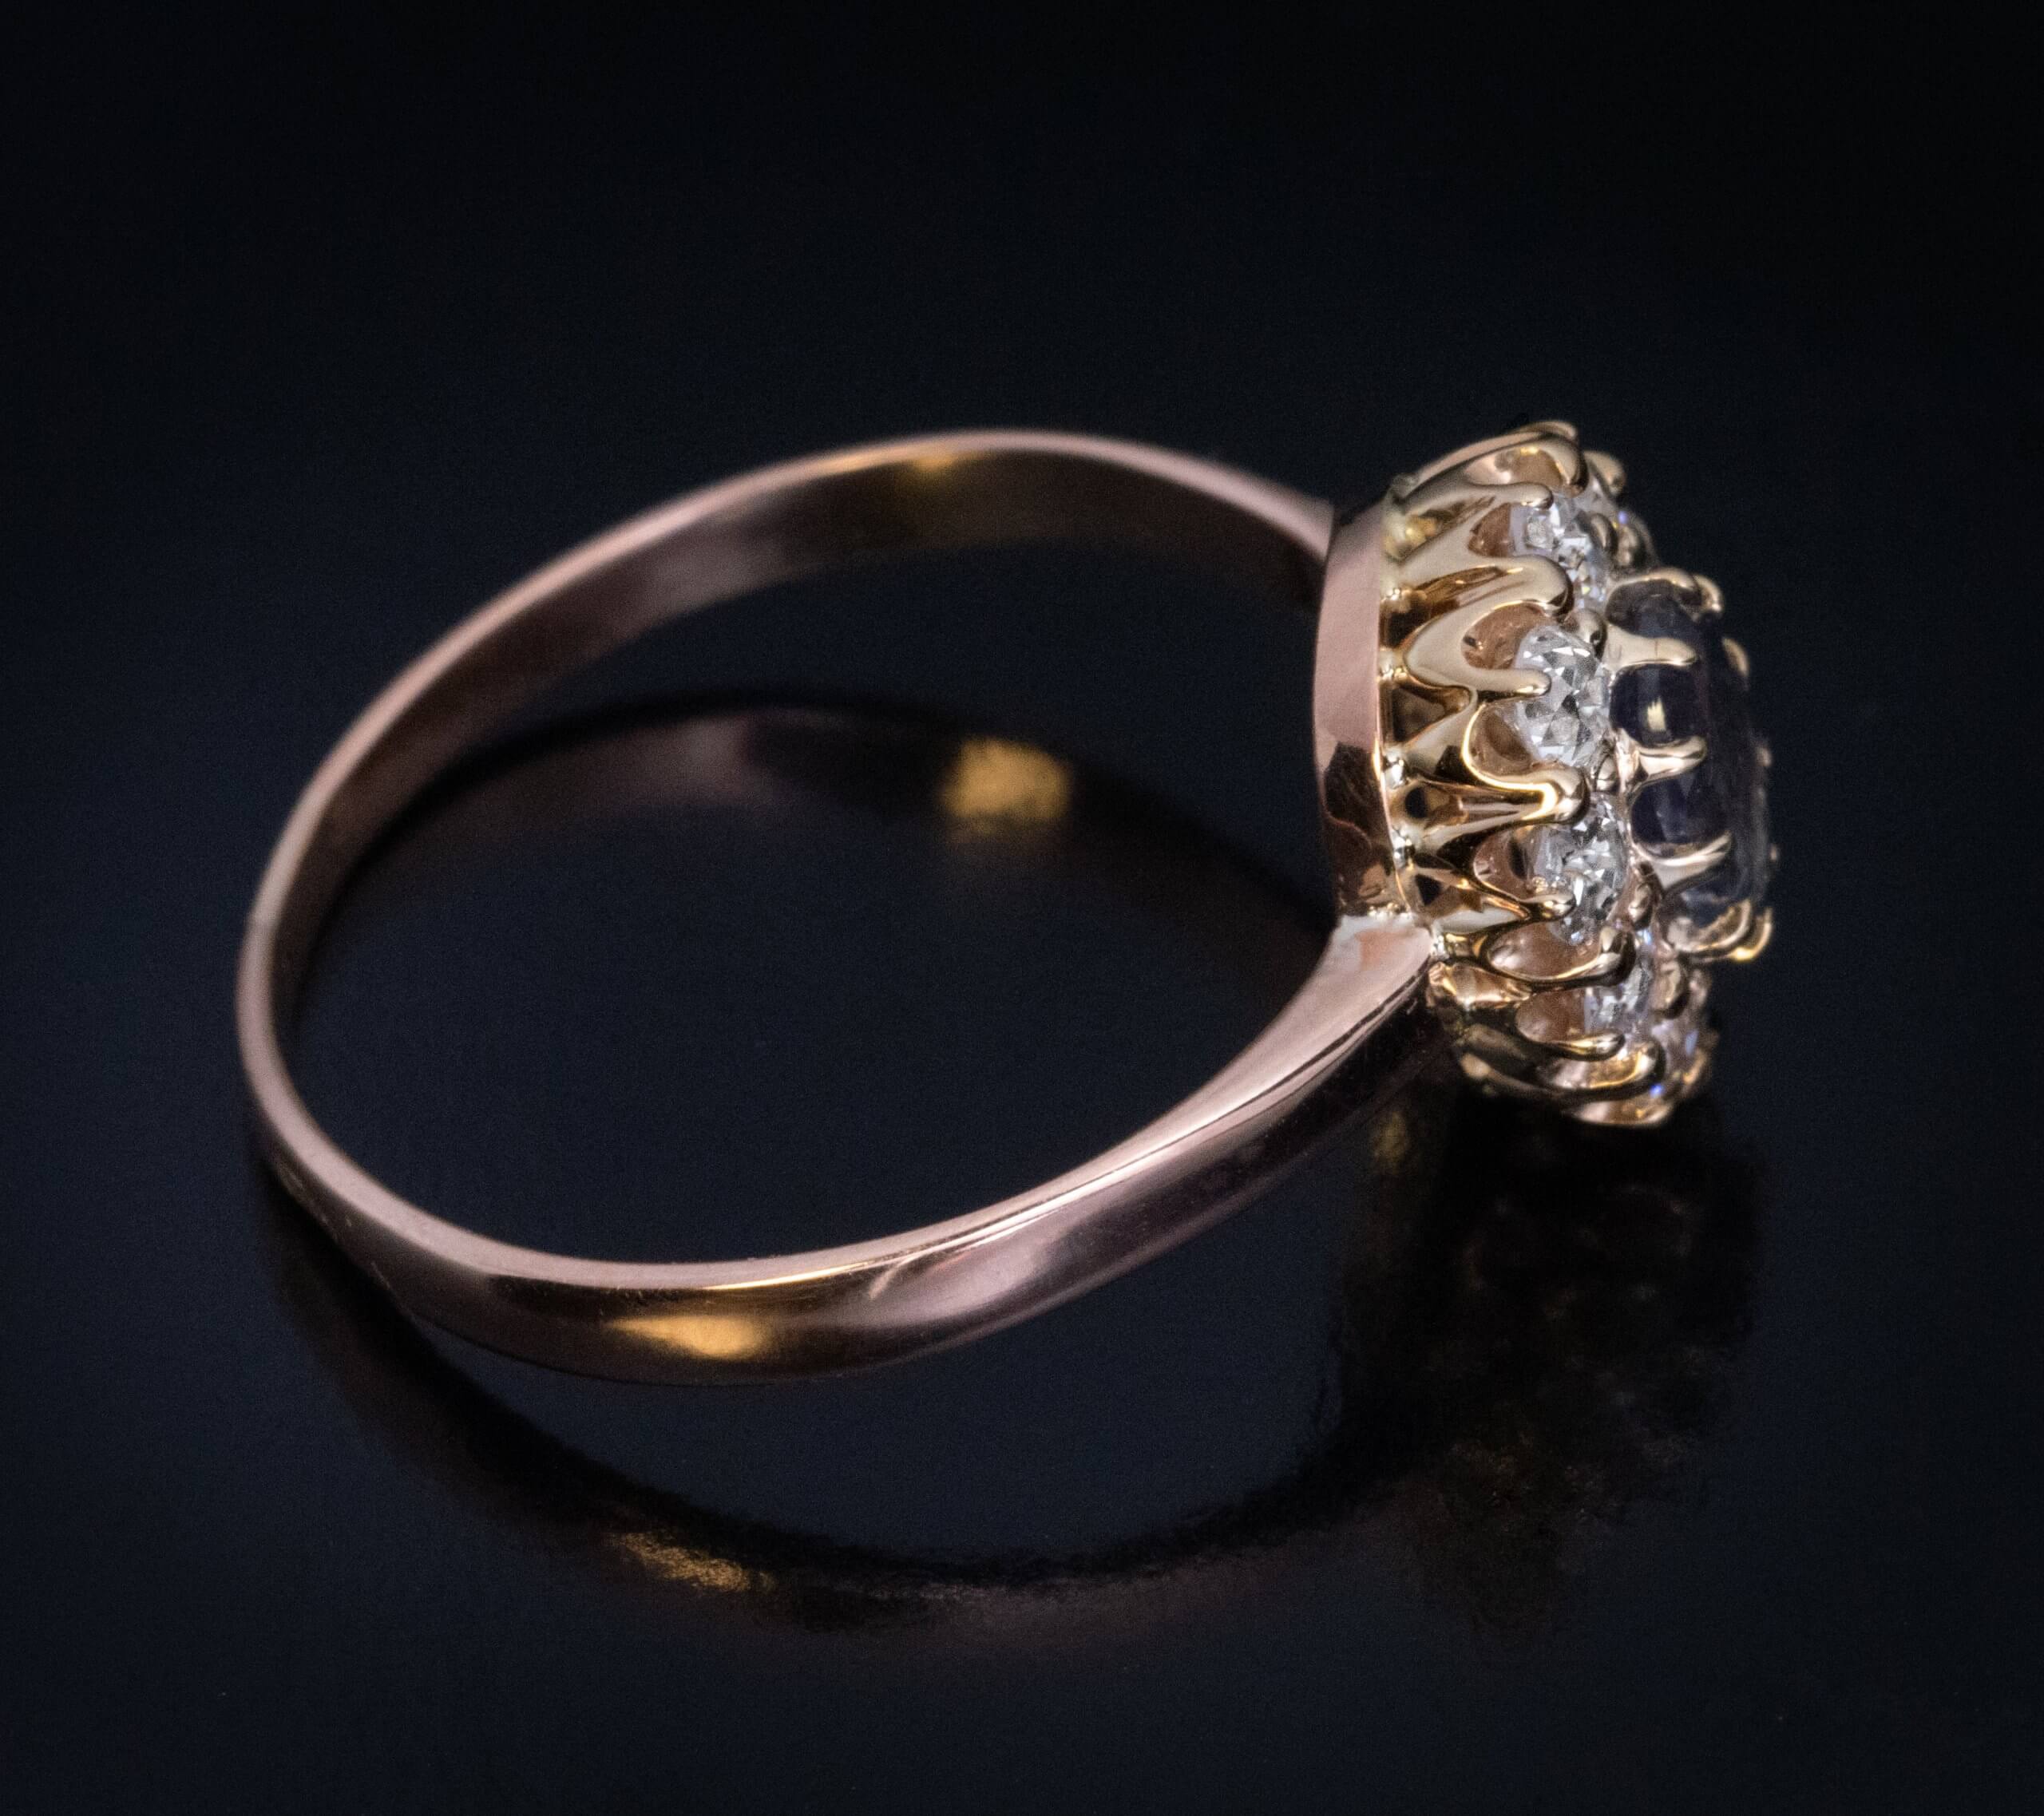 Antique Russian Alexandrite Diamond Cluster Ring Ref: 720956 - Antique ...